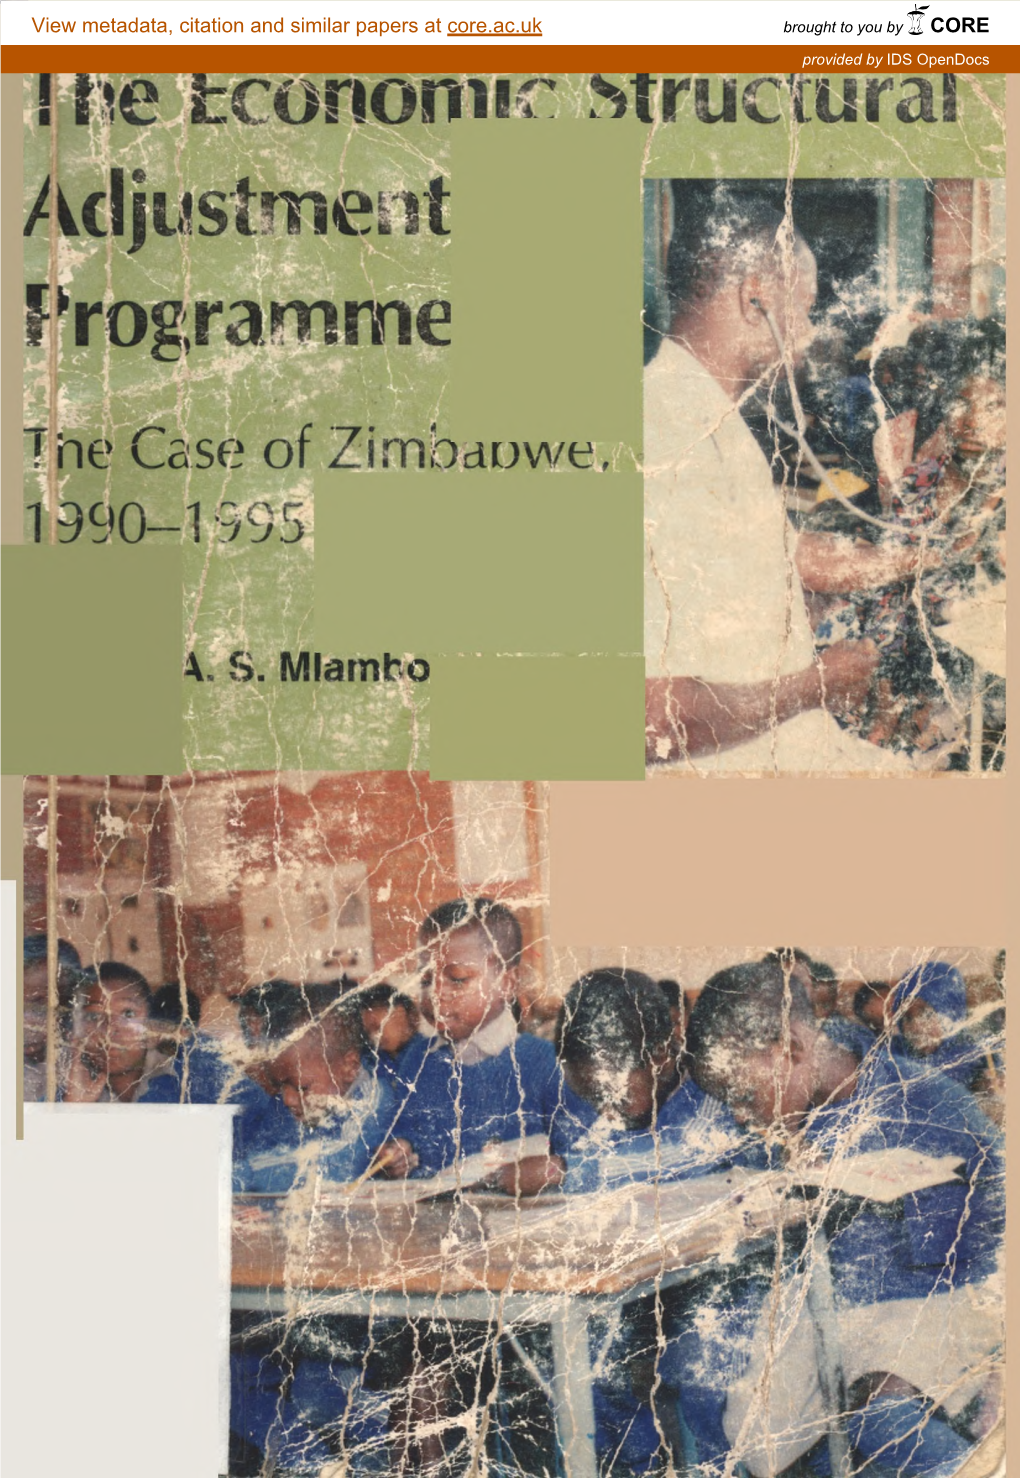 7He Case of Zimbaowe